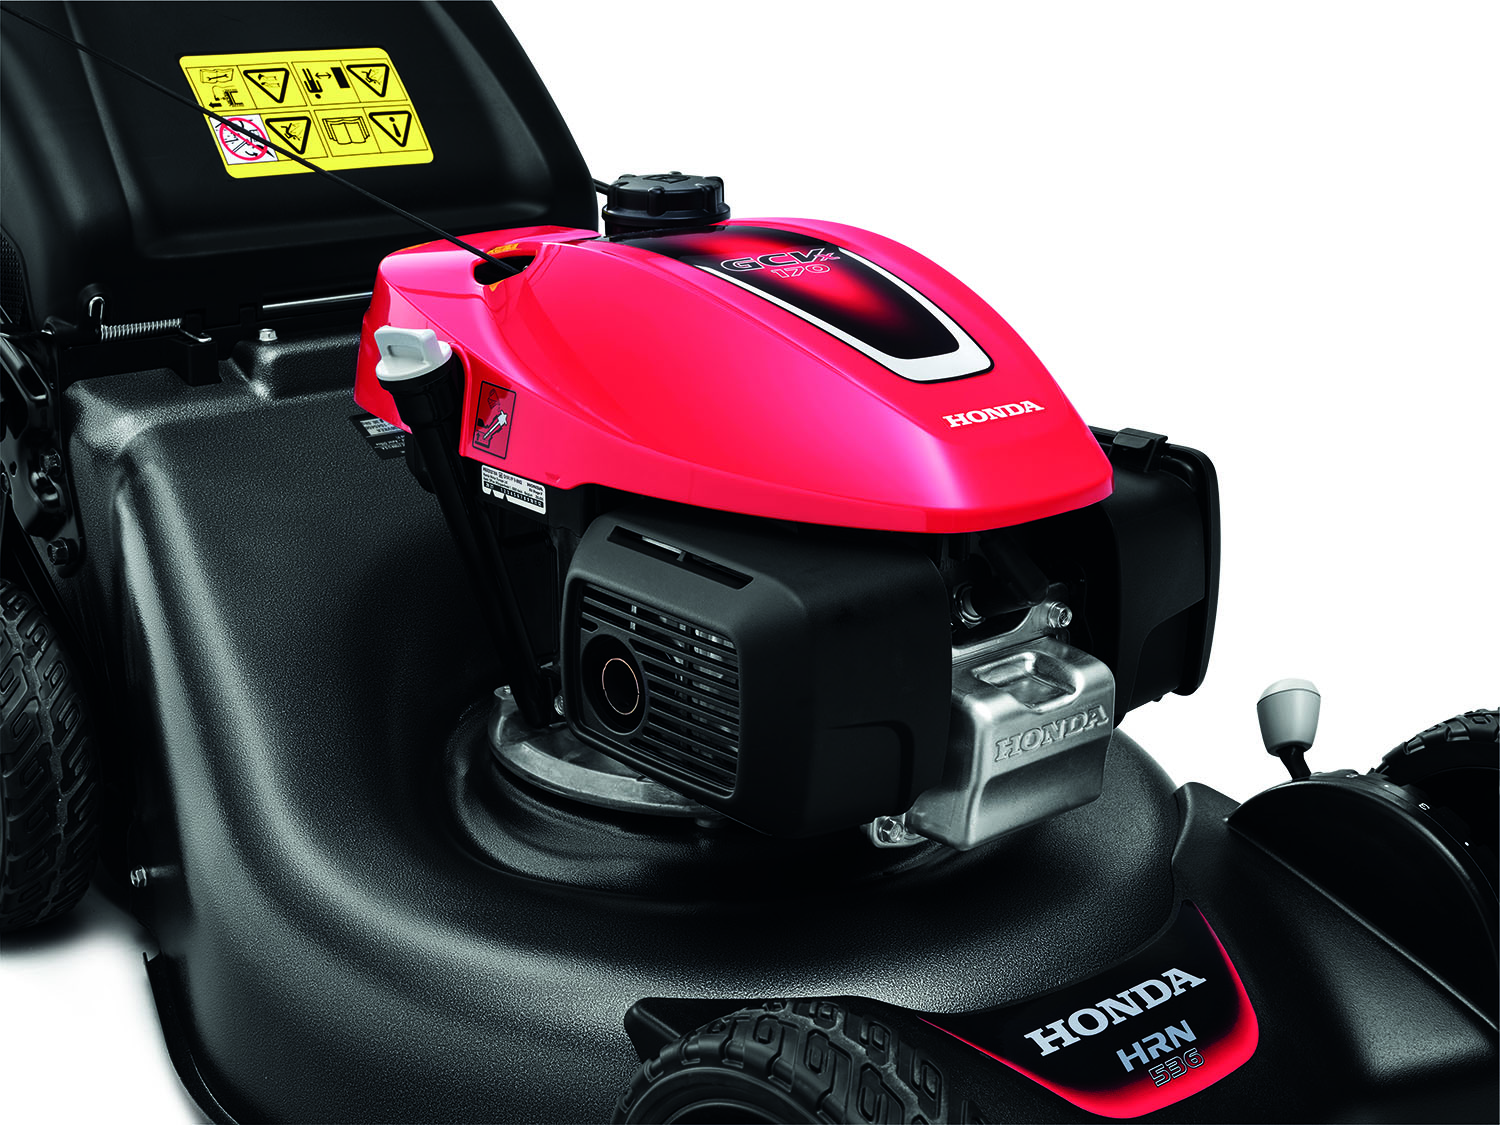 Honda HRN536 VYE Variable Speed Lawnmower